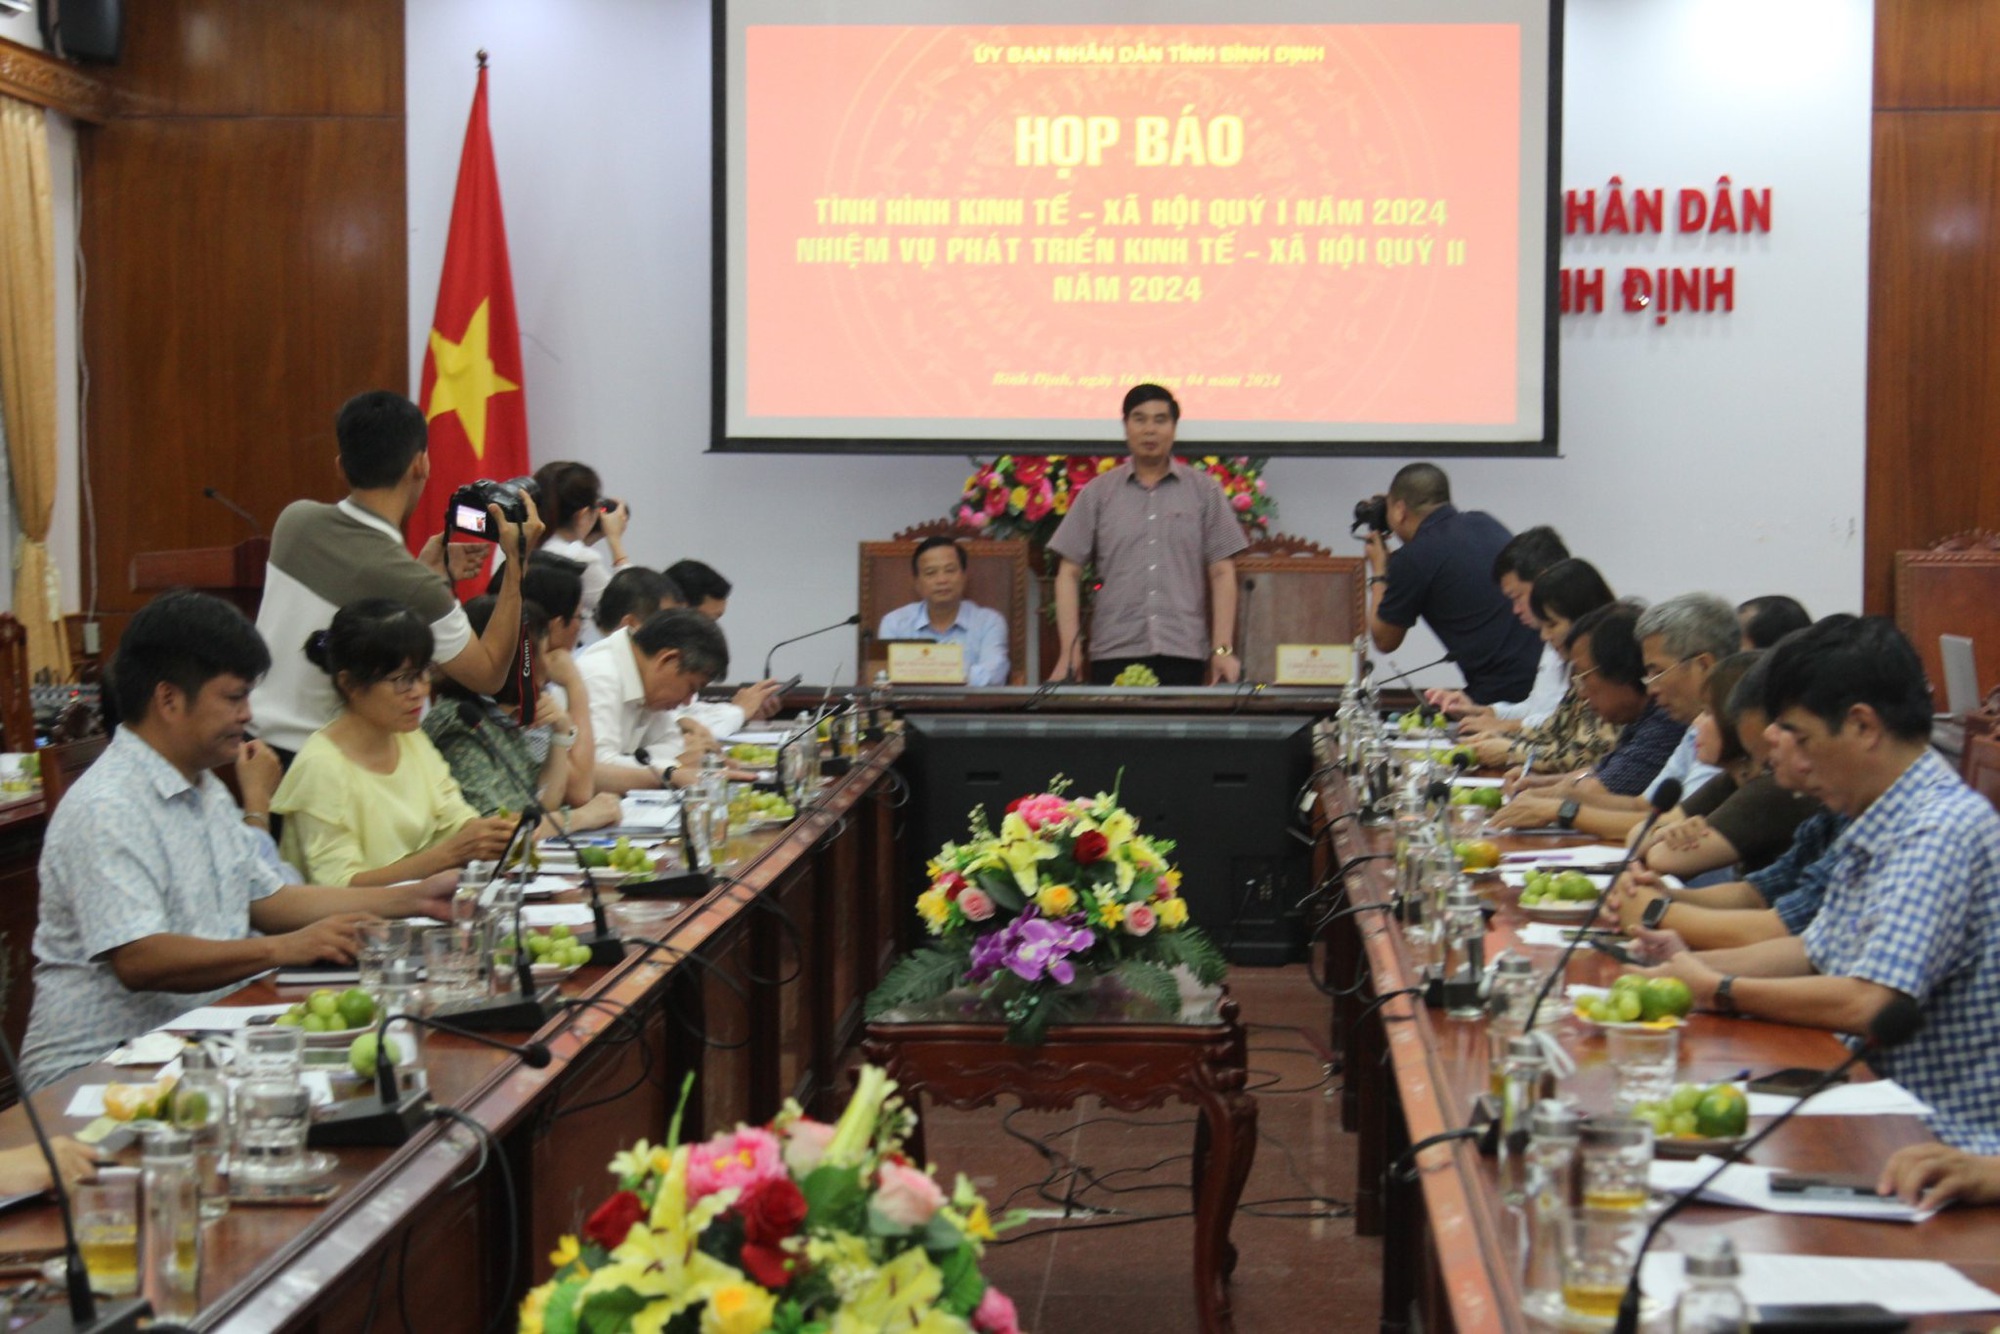 Phó Chủ tịch UBND tỉnh Bình Định lên tiếng trước vụ huyện chi sai 5,3 tỷ đồng "đòi" 172 lần không được- Ảnh 2.